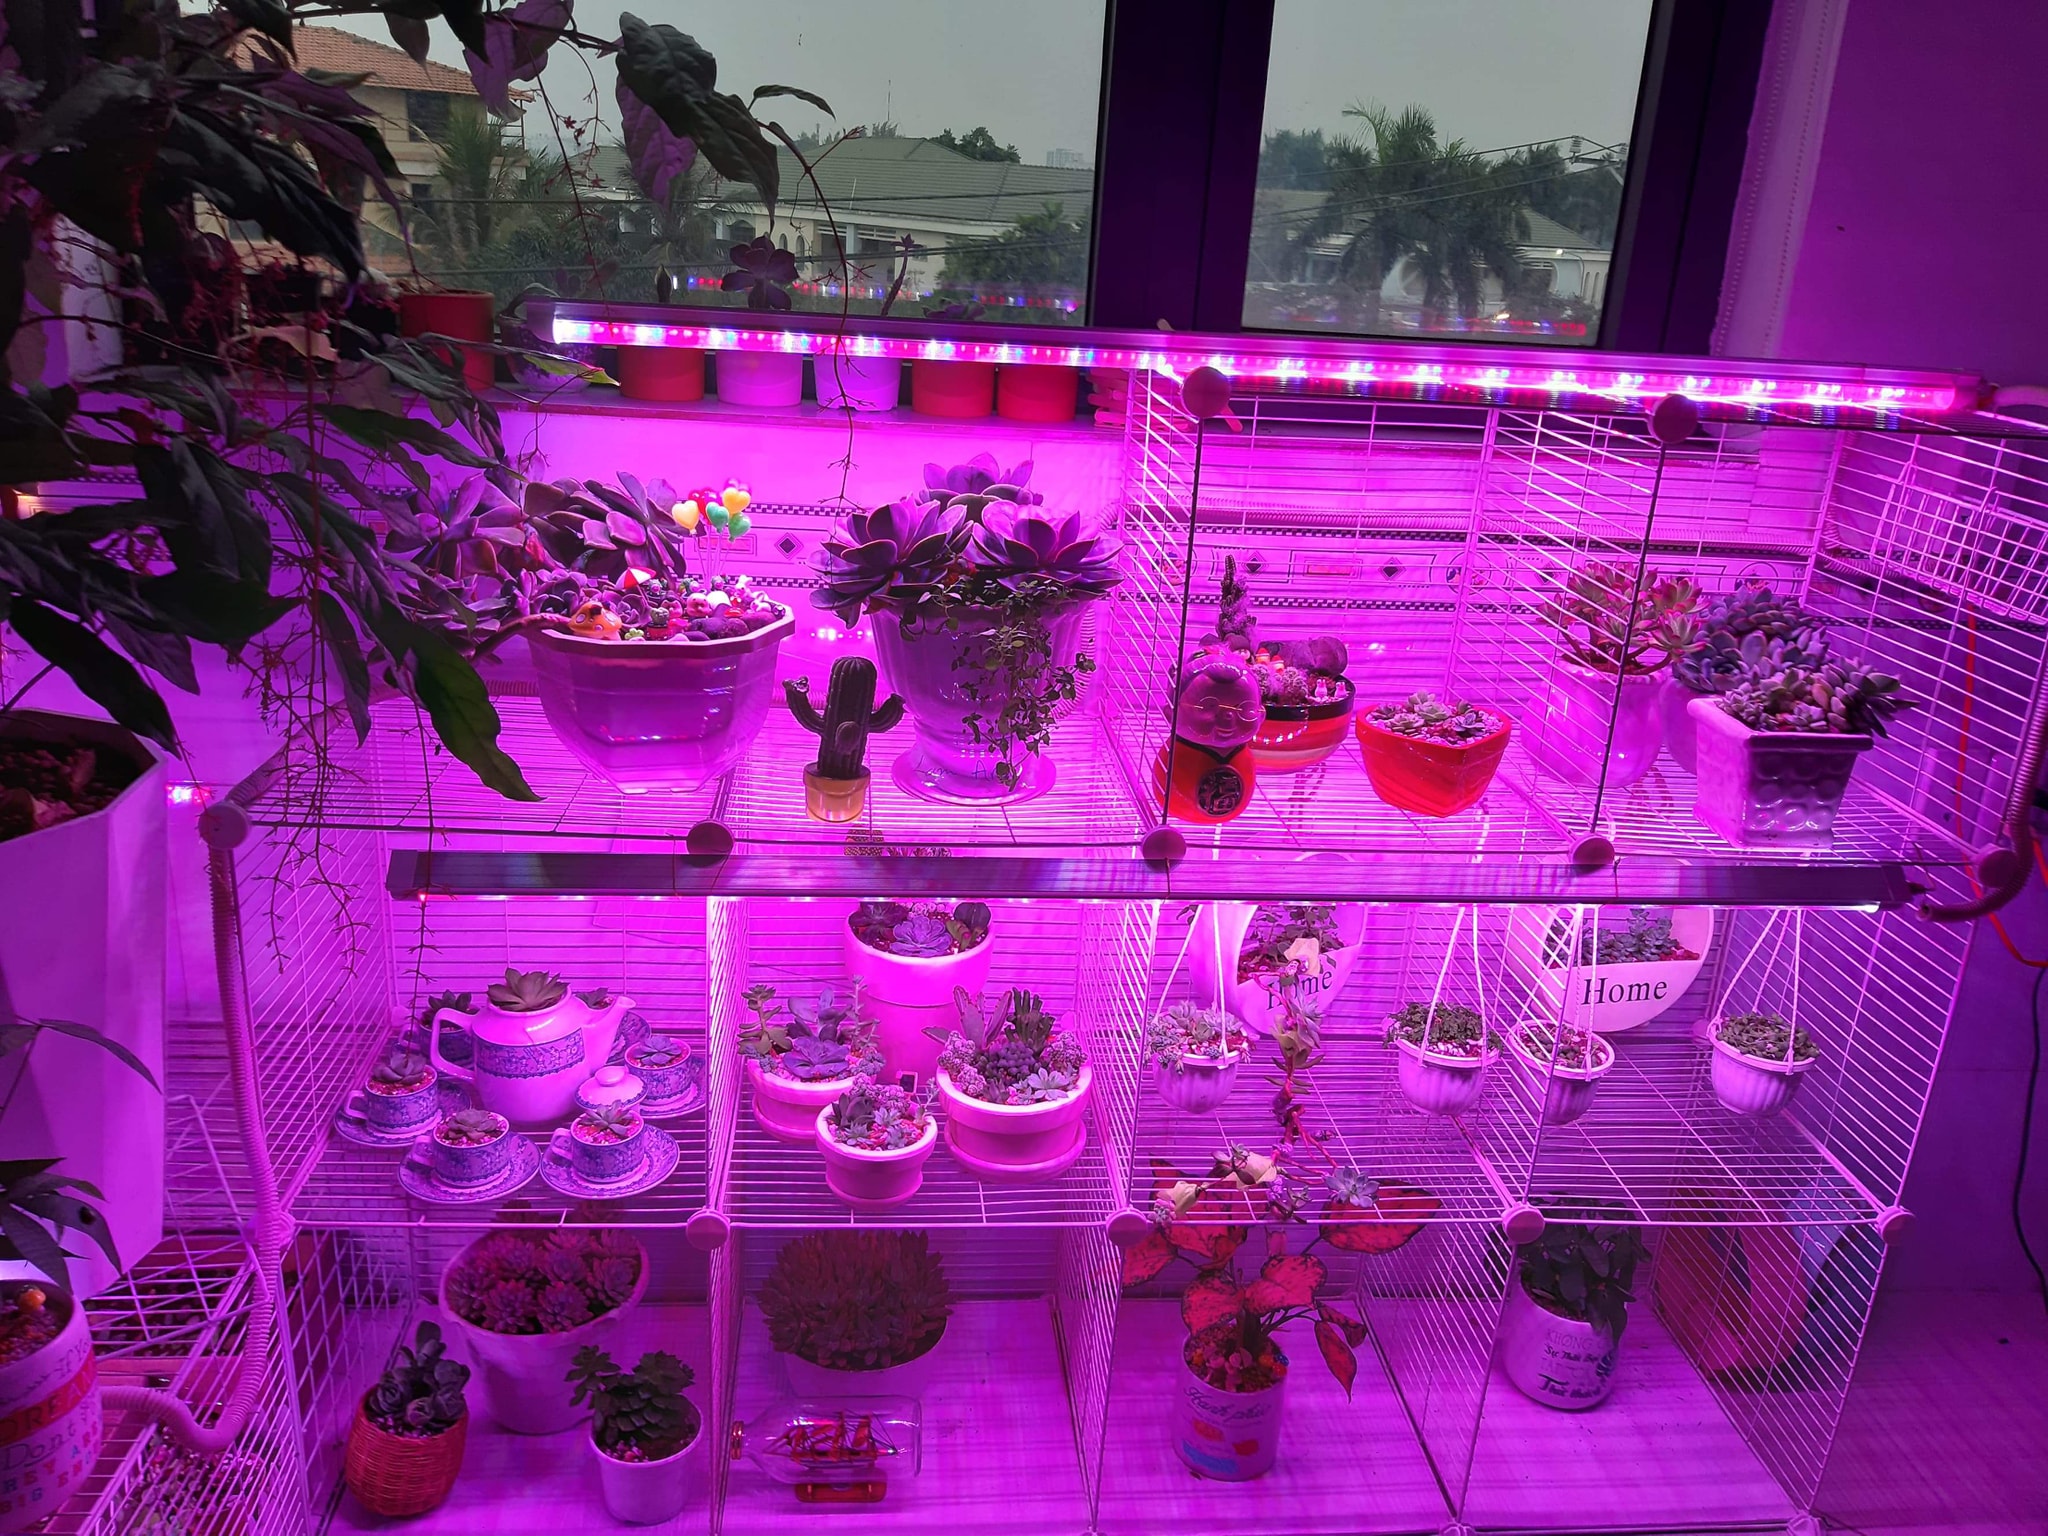 Đèn Trồng Cây trong nhà dạng LED Dài 1.2M Green Smart Light 30W dùng trồng cây trong nhà hay trồng rau sạch trong nhà